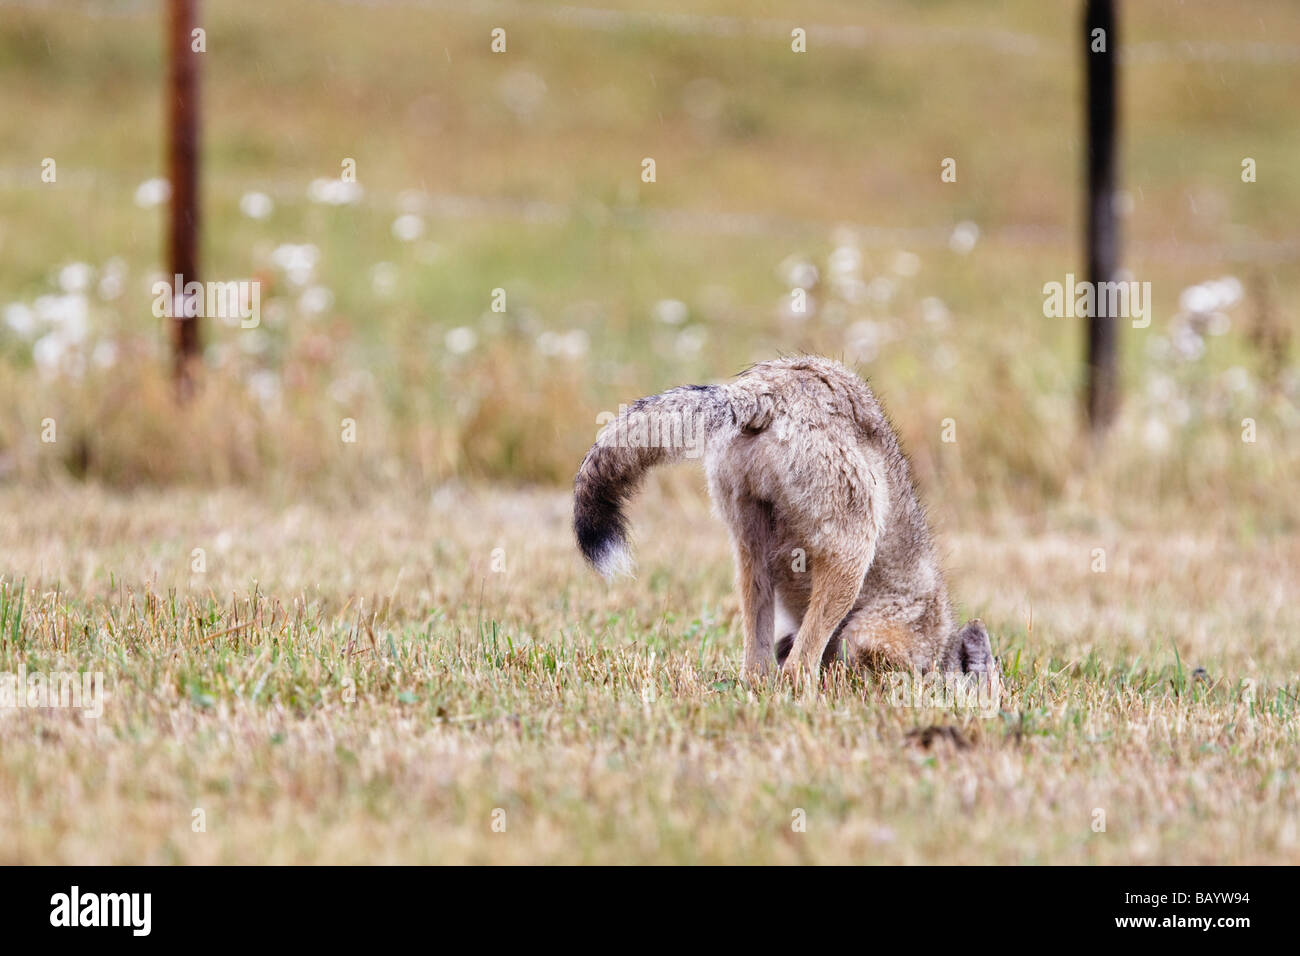 Coyote du nord la chasse et creuser pour un rongeur dans un pré. Le champ est dans les terres agricoles en Colombie-Britannique, Canada. Banque D'Images